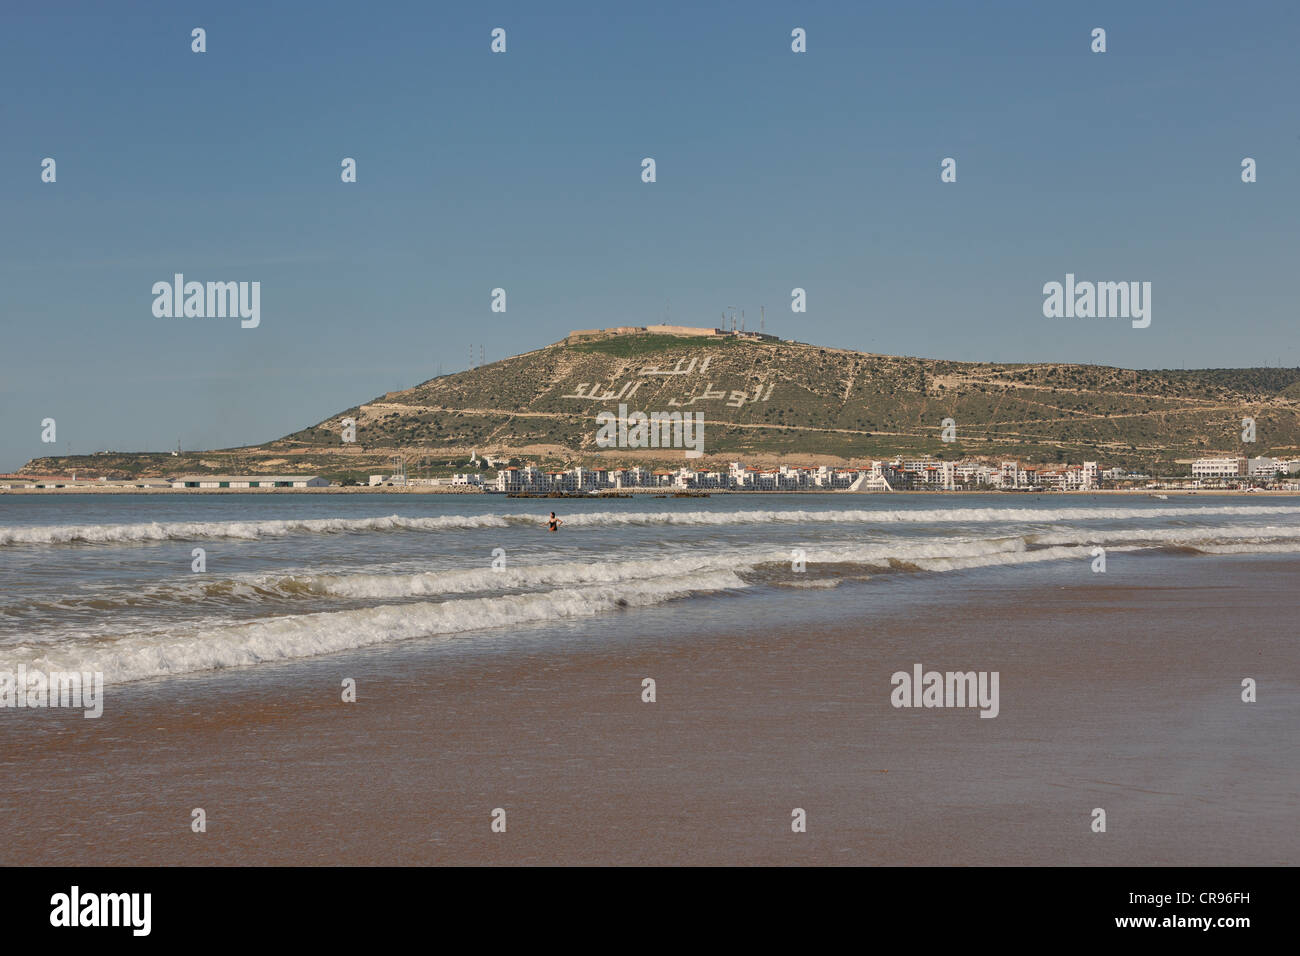 Plage d'Agadir, hill avec les mots, Allah, al-Watan, al-Malik, ce qui signifie qu'Allah, la patrie, le Roi, le Maroc, l'Afrique Banque D'Images